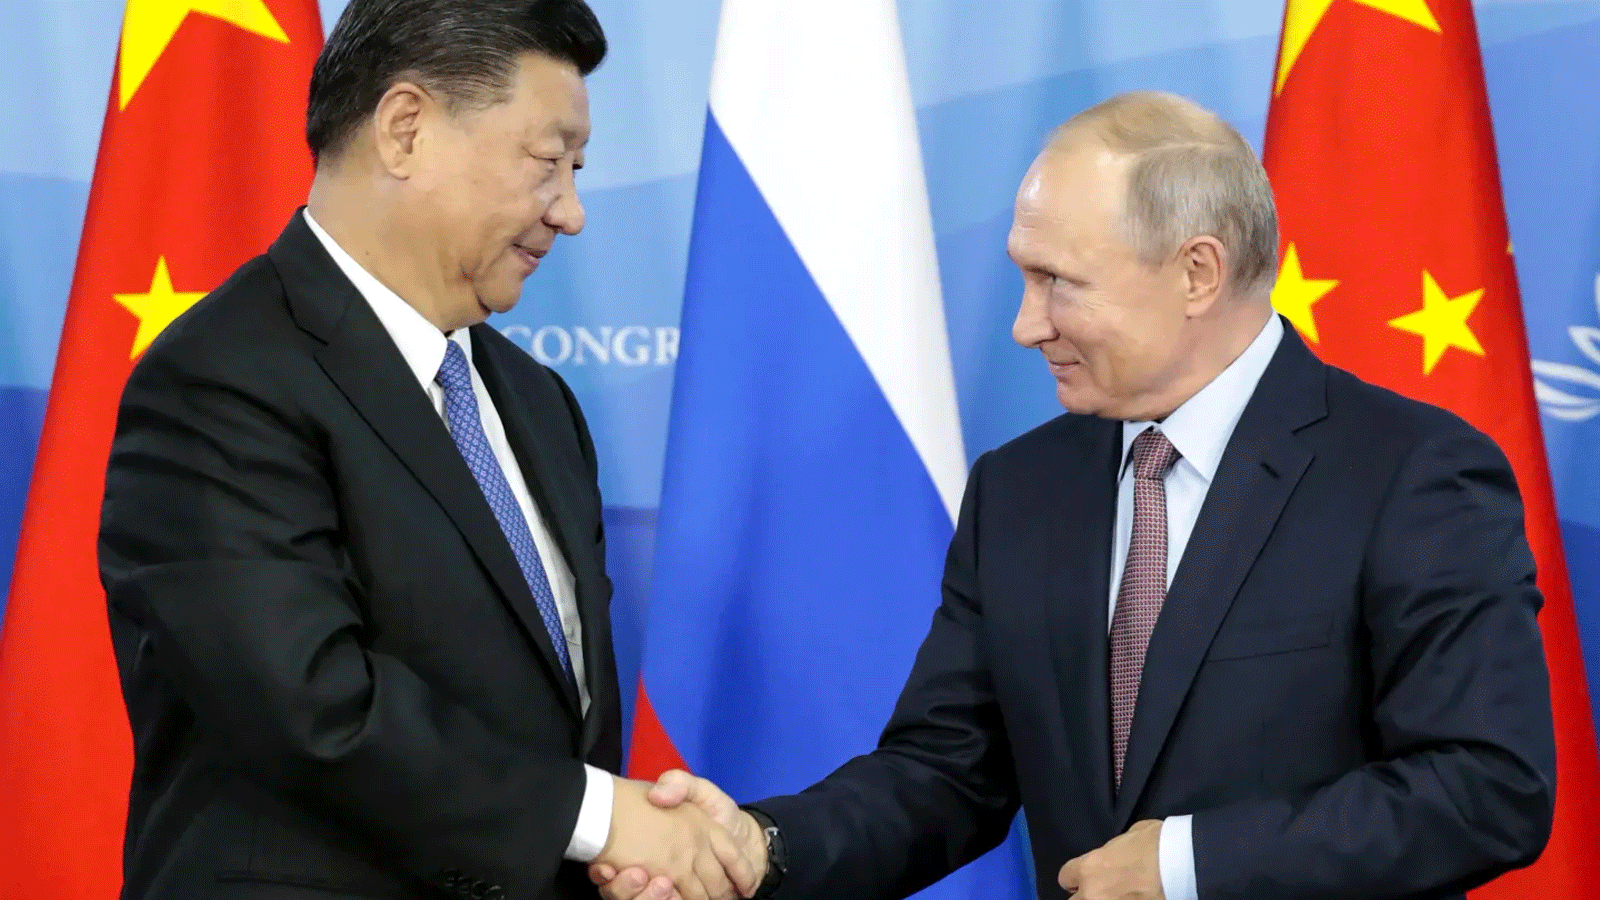 الرئيس الروسي فلاديمير بوتين يصافح نظيره الصيني شي جينبينغ الذي بدأ زيارة الى موسكو تستمر ثلاثة أيام